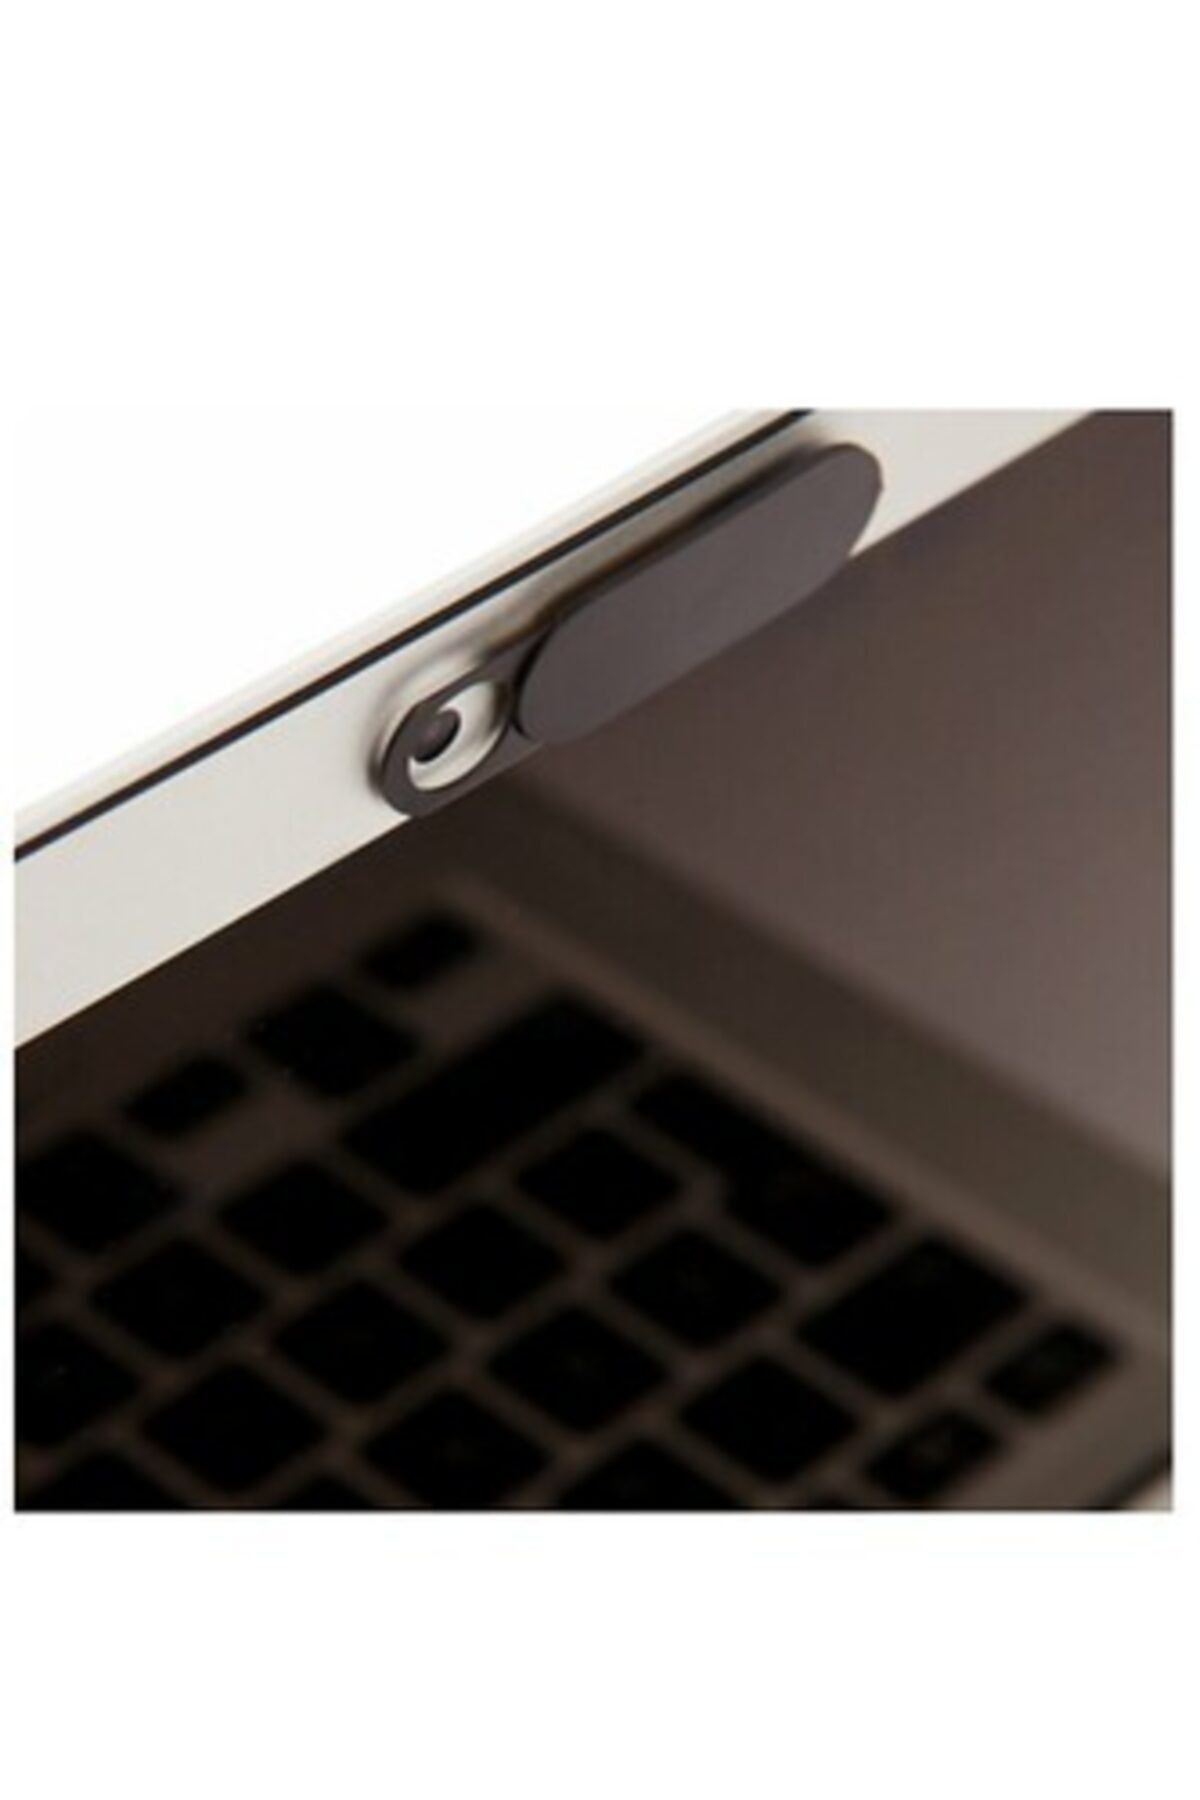 NEKTAR 2 Adet Laptop Notebook Pc Bilgisayar Tv Kamera Webcam Cover Sticker Kapatıcı Koruyucu